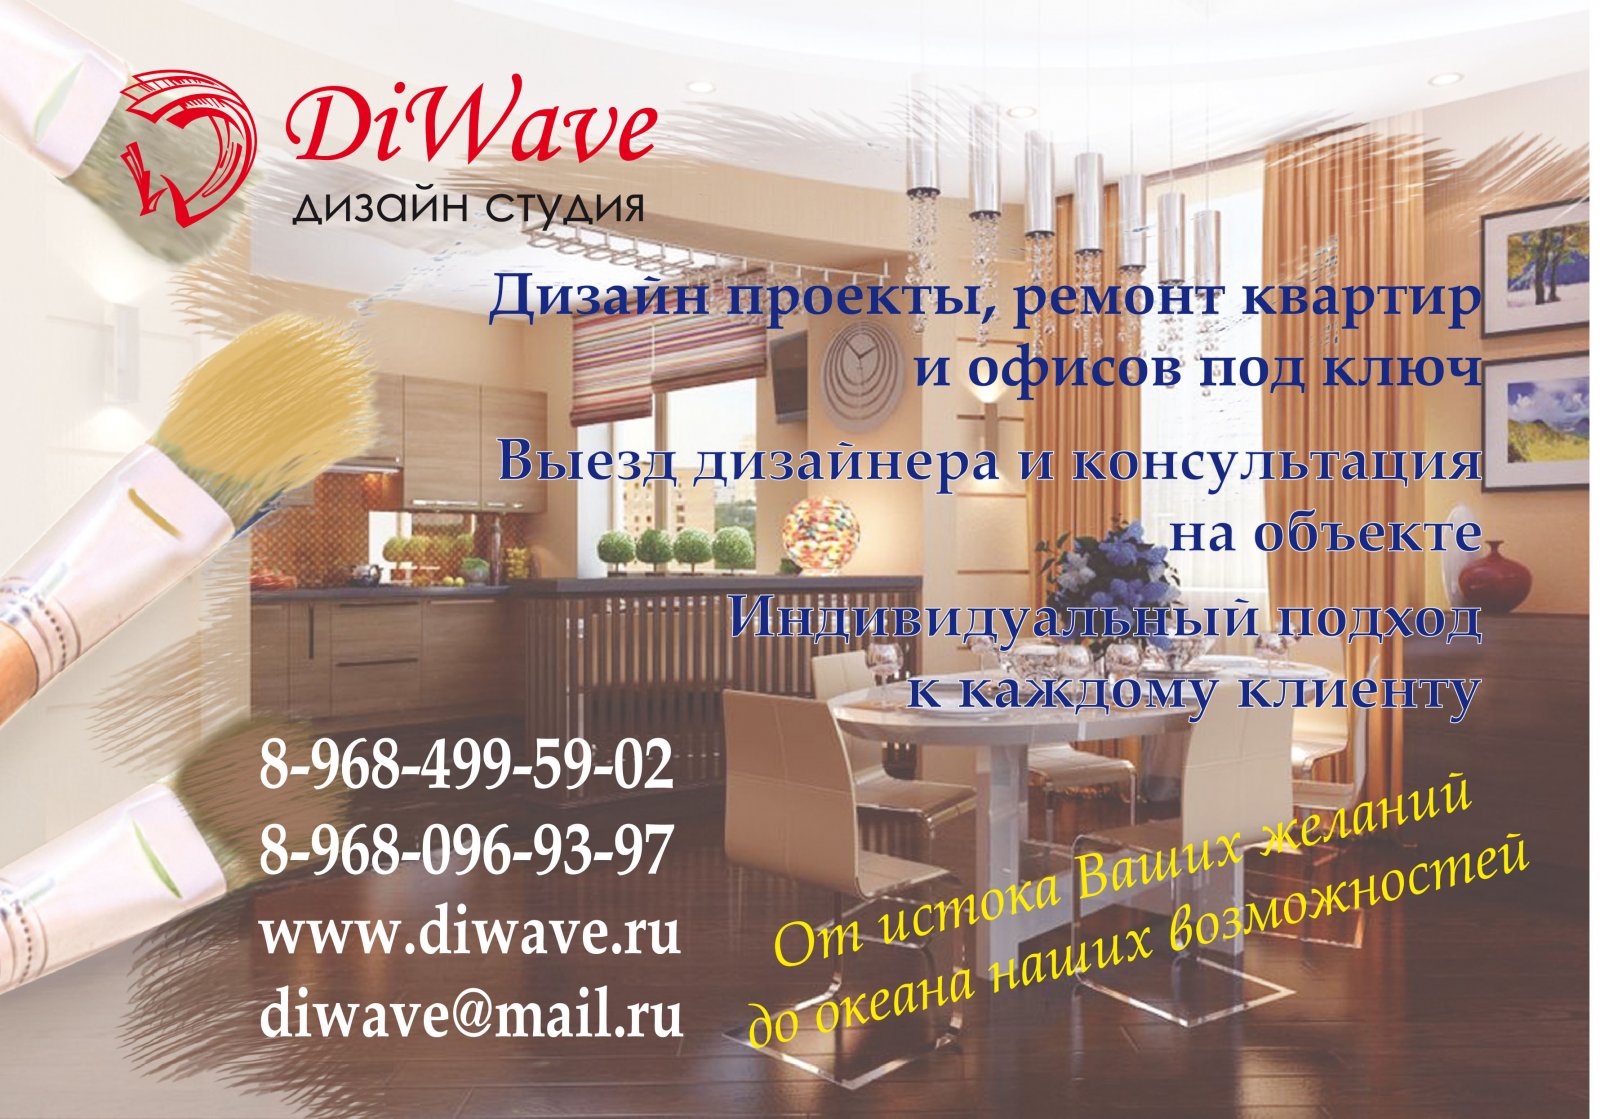 Diwave